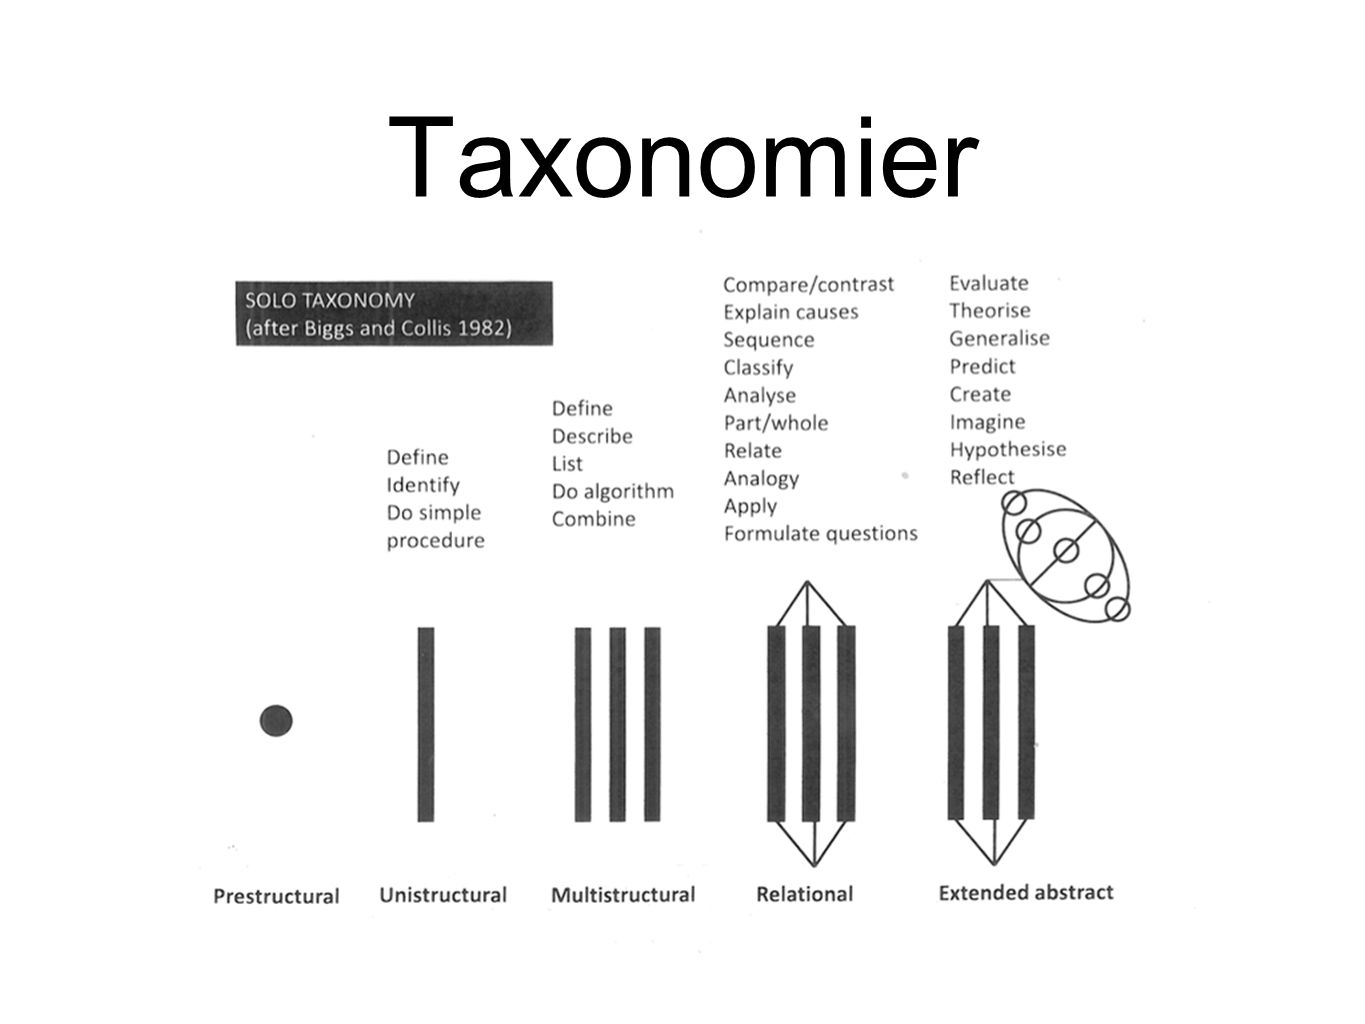 Taxonomier Text